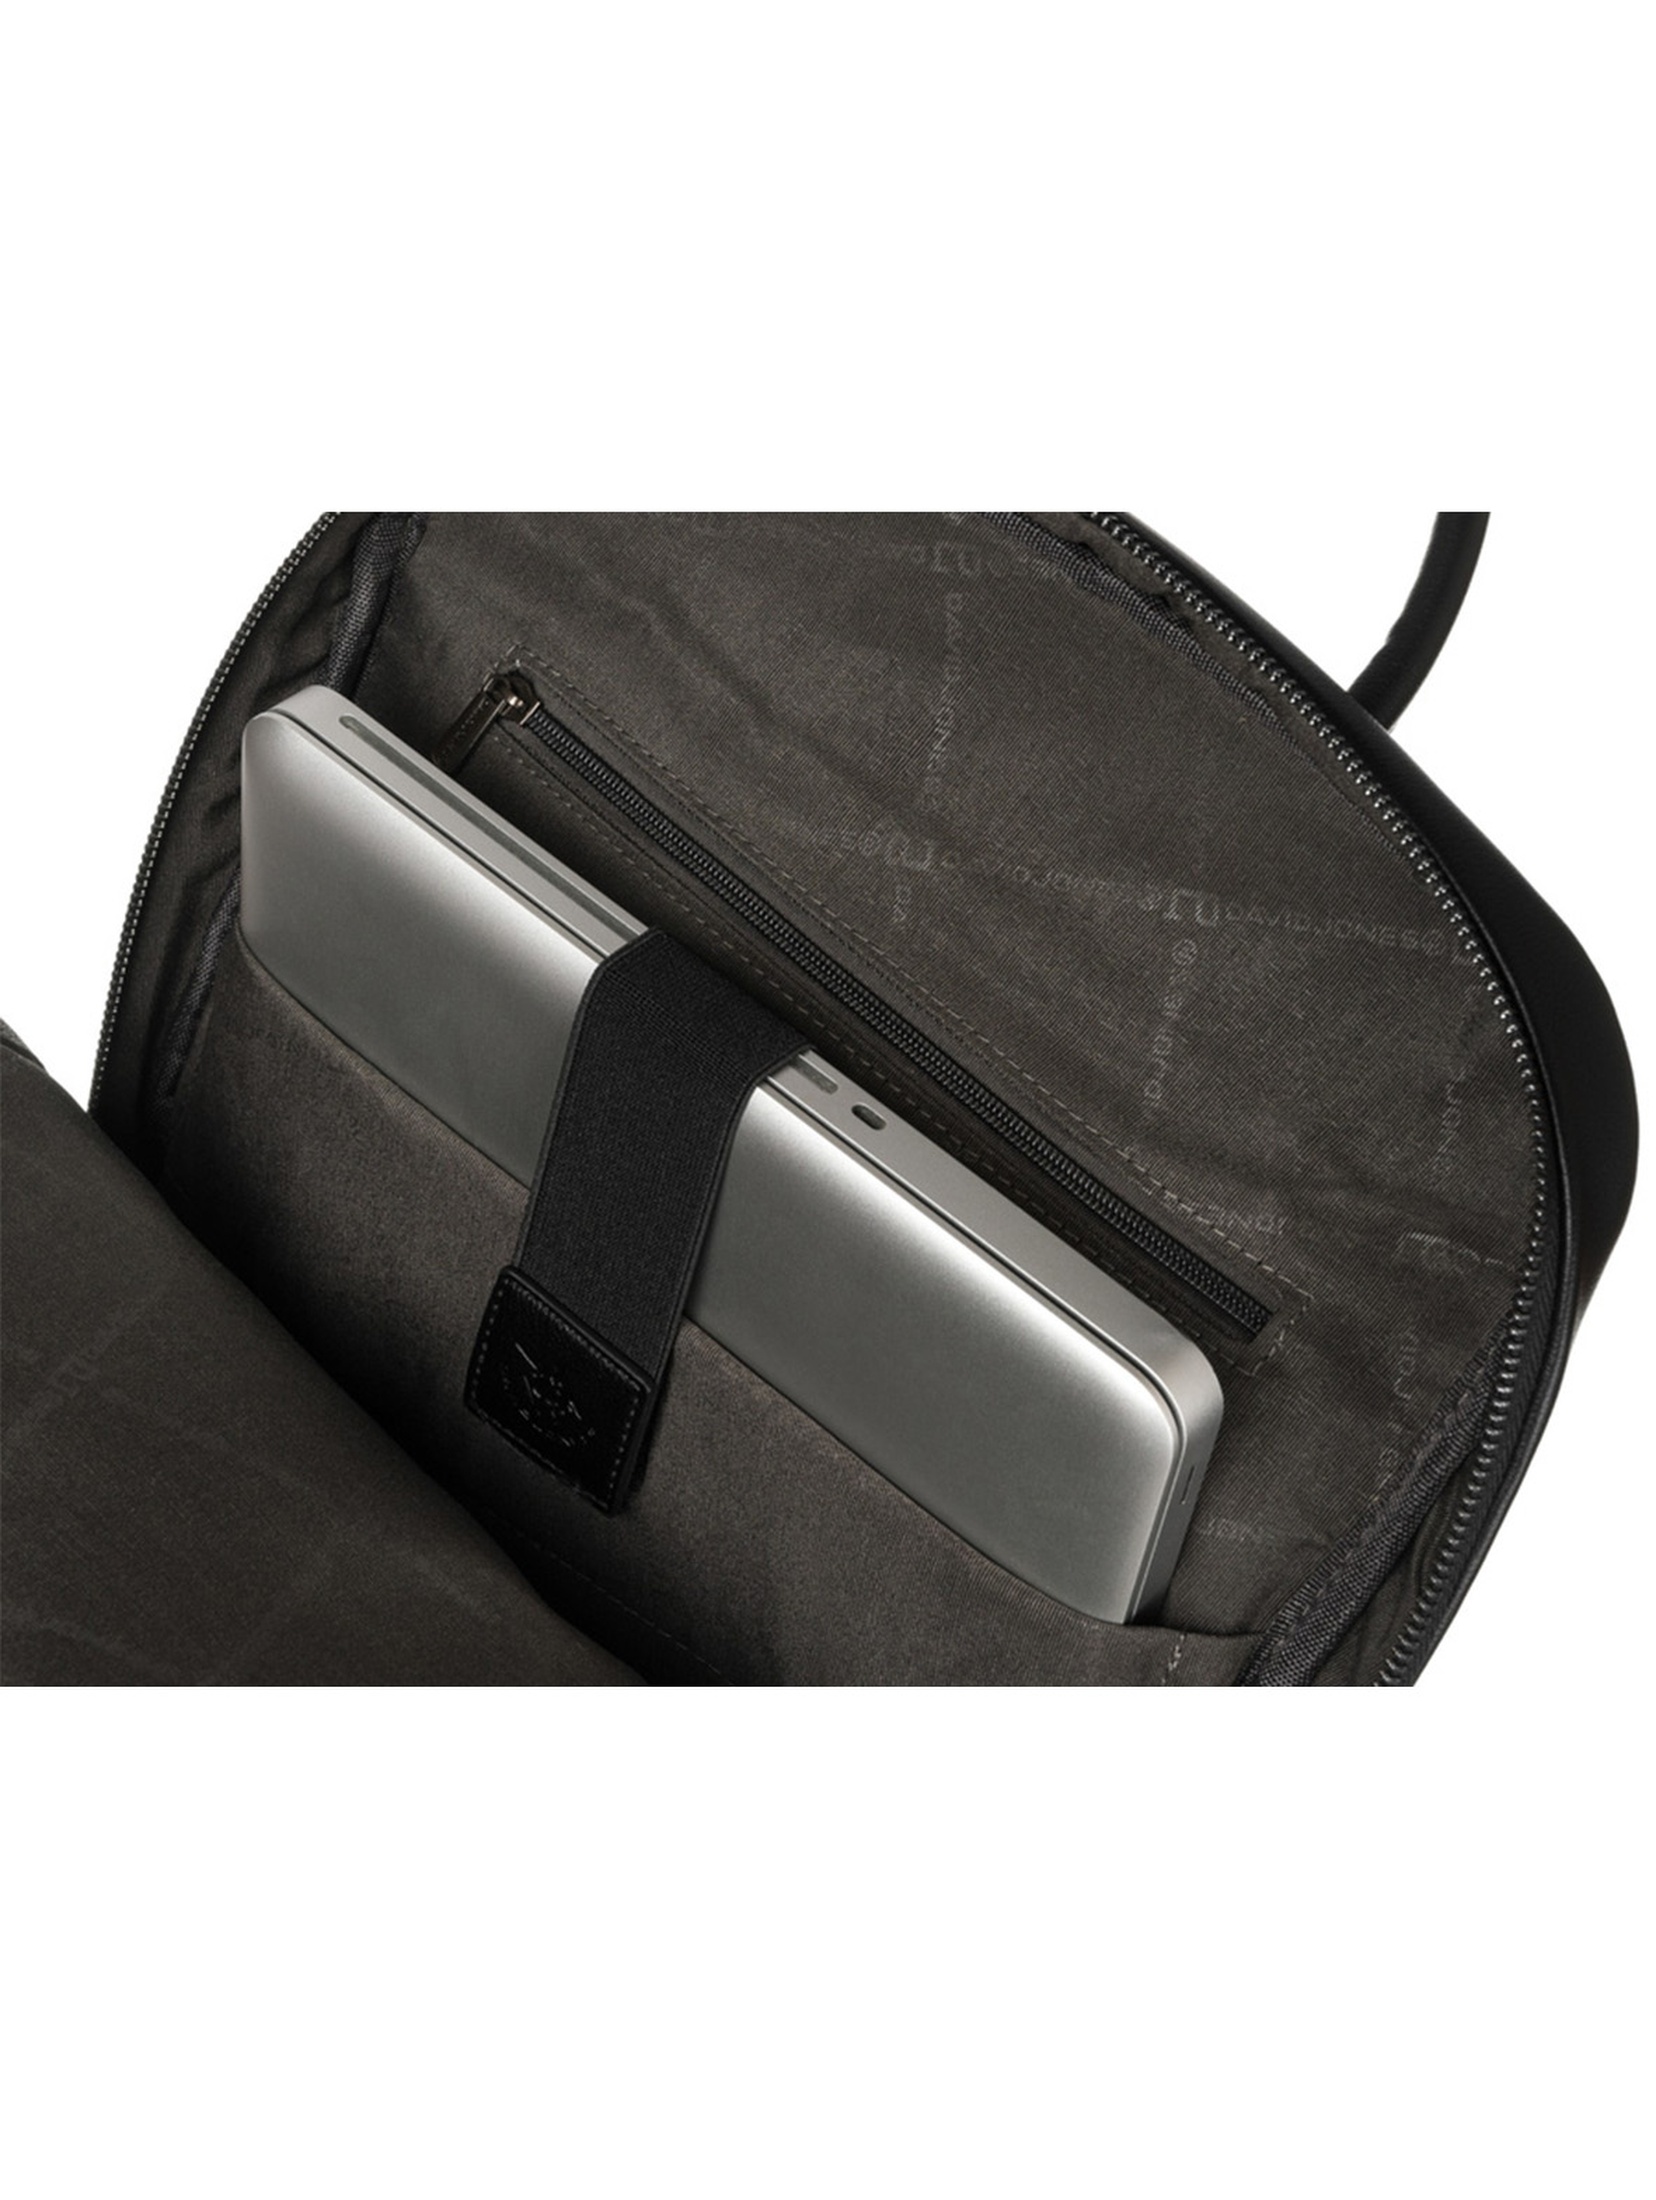 Pojemny, biznesowy plecak z miejscem na laptopa - David Jones - czarny